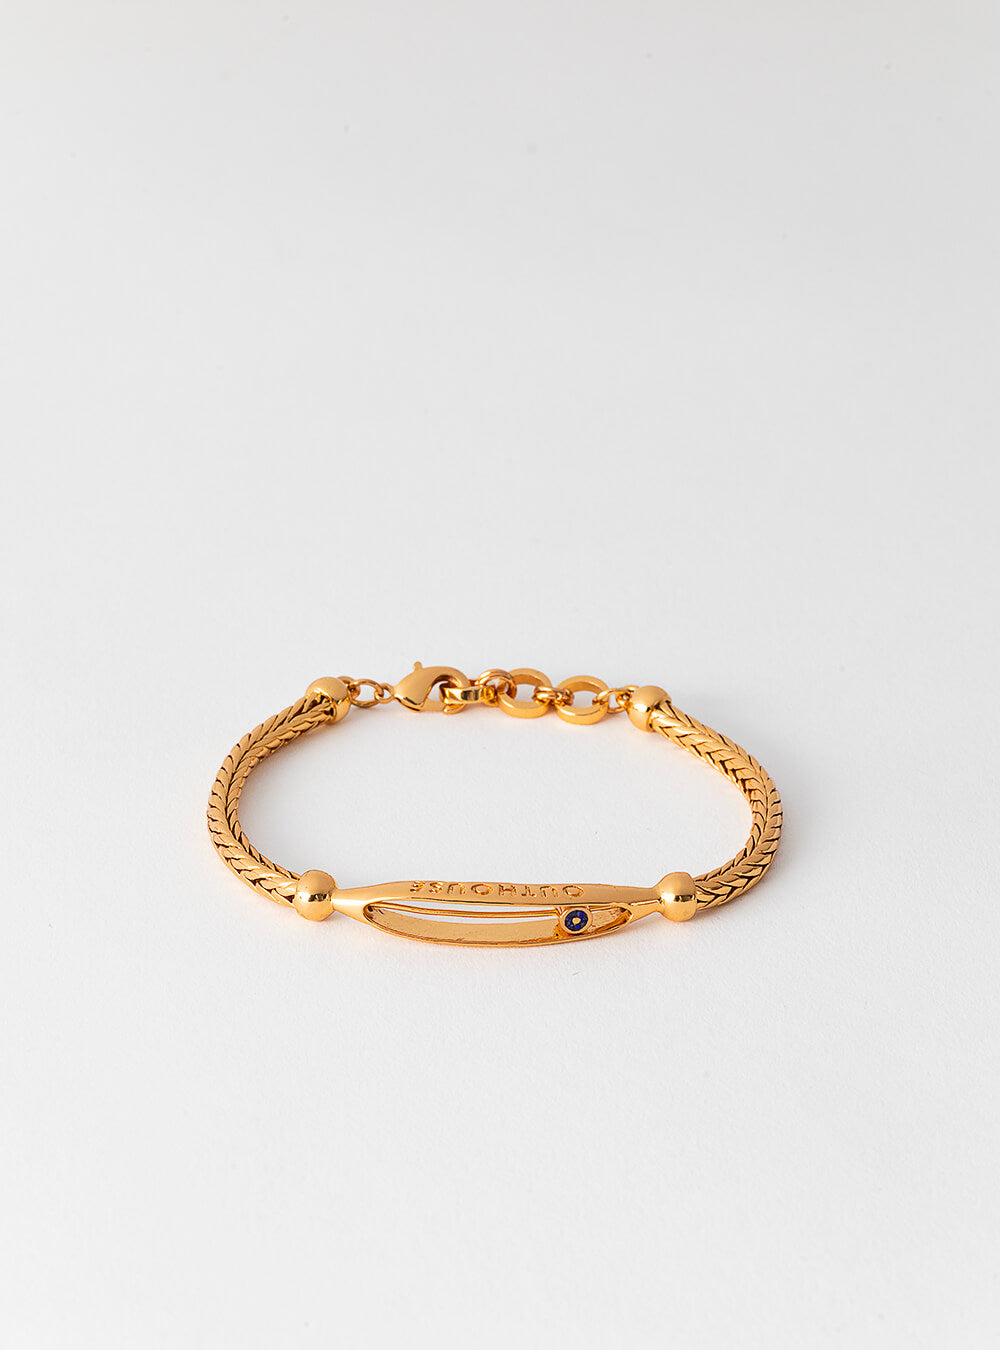 fcityin  Latest High Gold Covering Women Bangles Bracelets For Women Pack